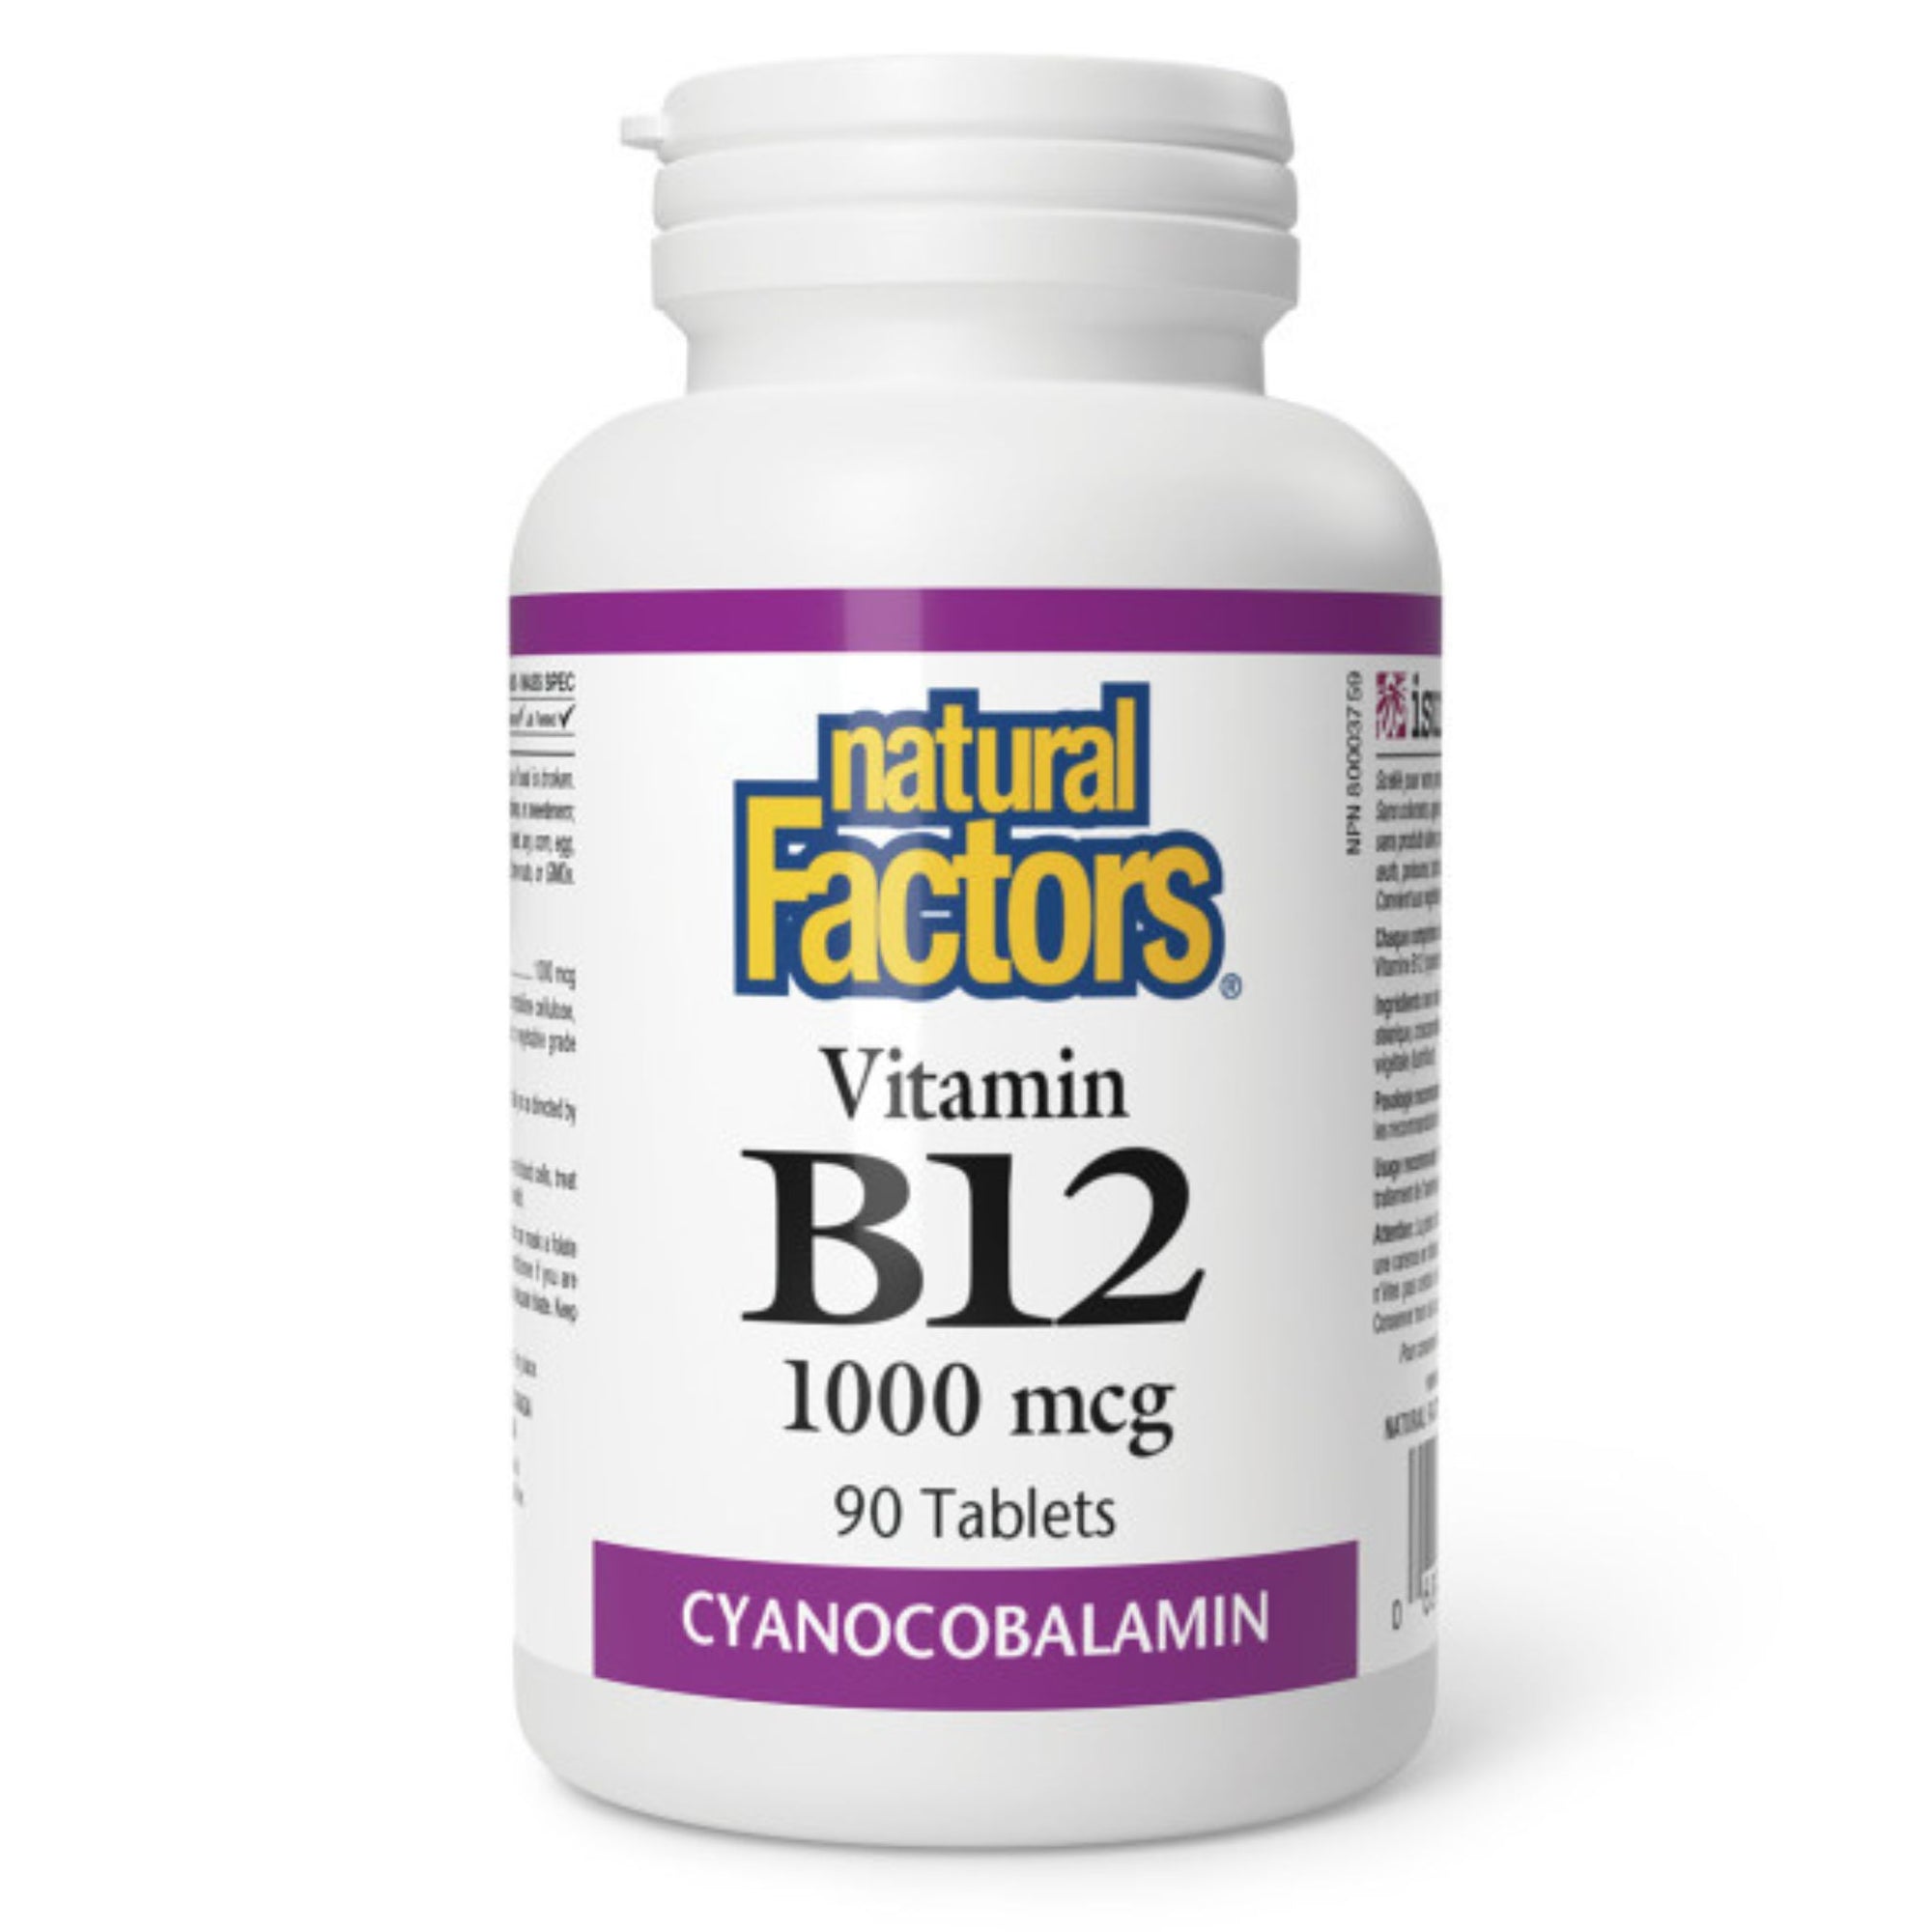 Natural Factors Vitamin B12 1000mcg - 90 tablets 